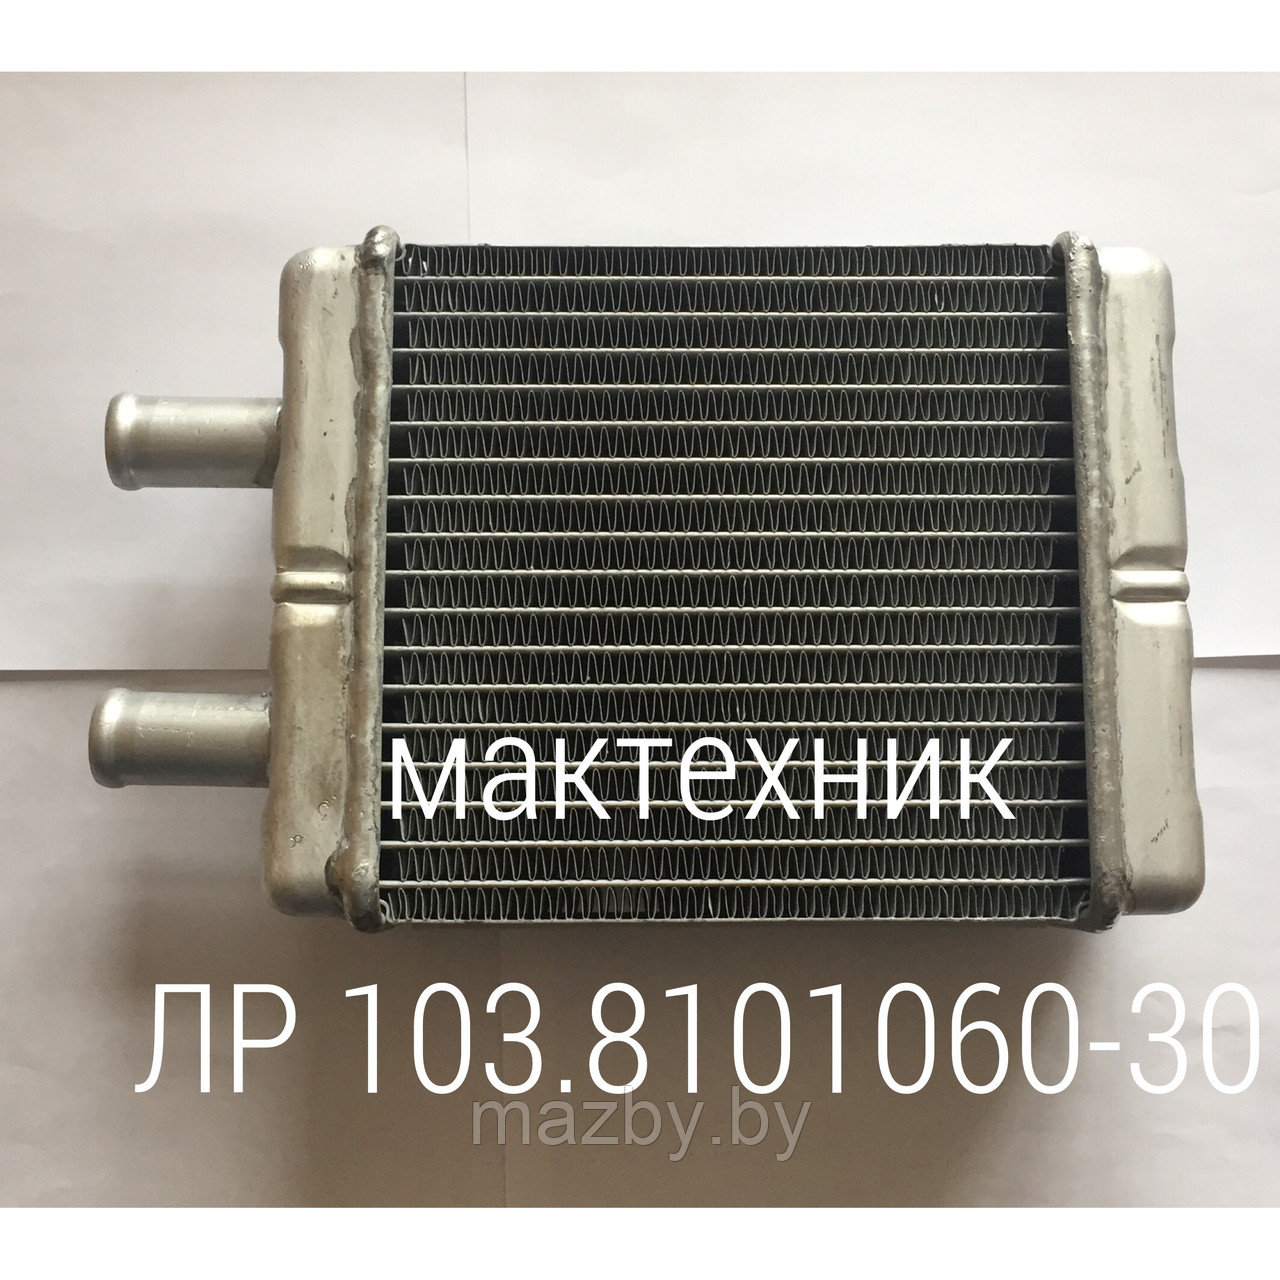 103-8101060 радиатор отопителя автобус МАЗ  ( 103-8101060-30 )  А1-306.242.251